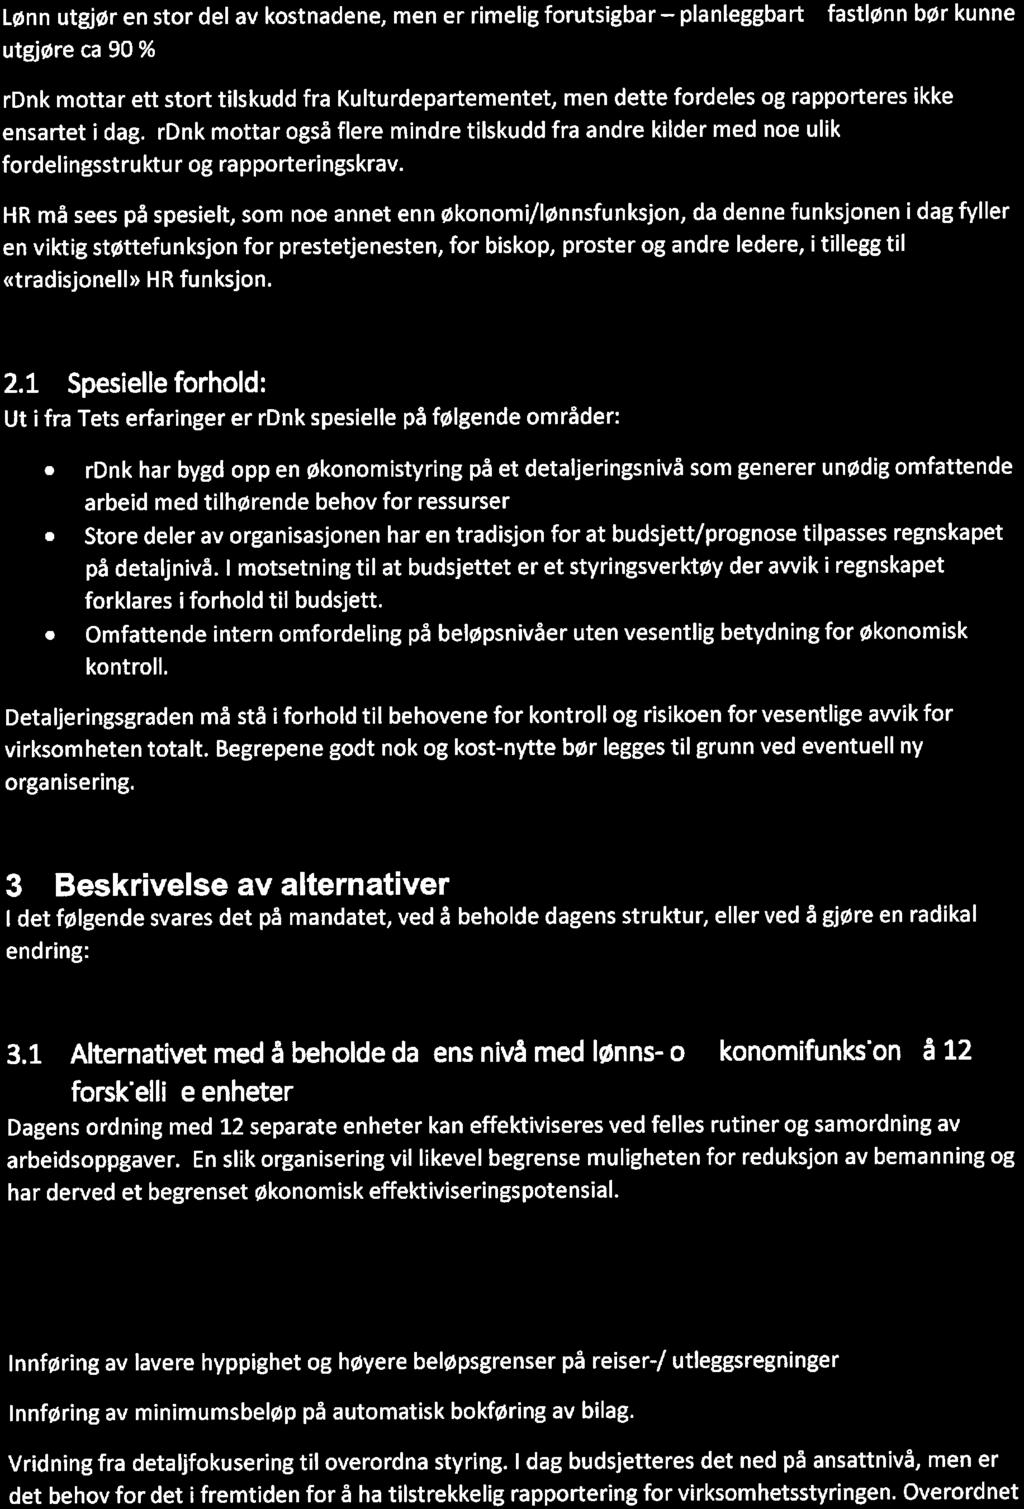 fektivisering av merkantile tjenester i rettssubjektet Den norske kirke - 18/02194-3 Effektivisering av merkantile tjenester i